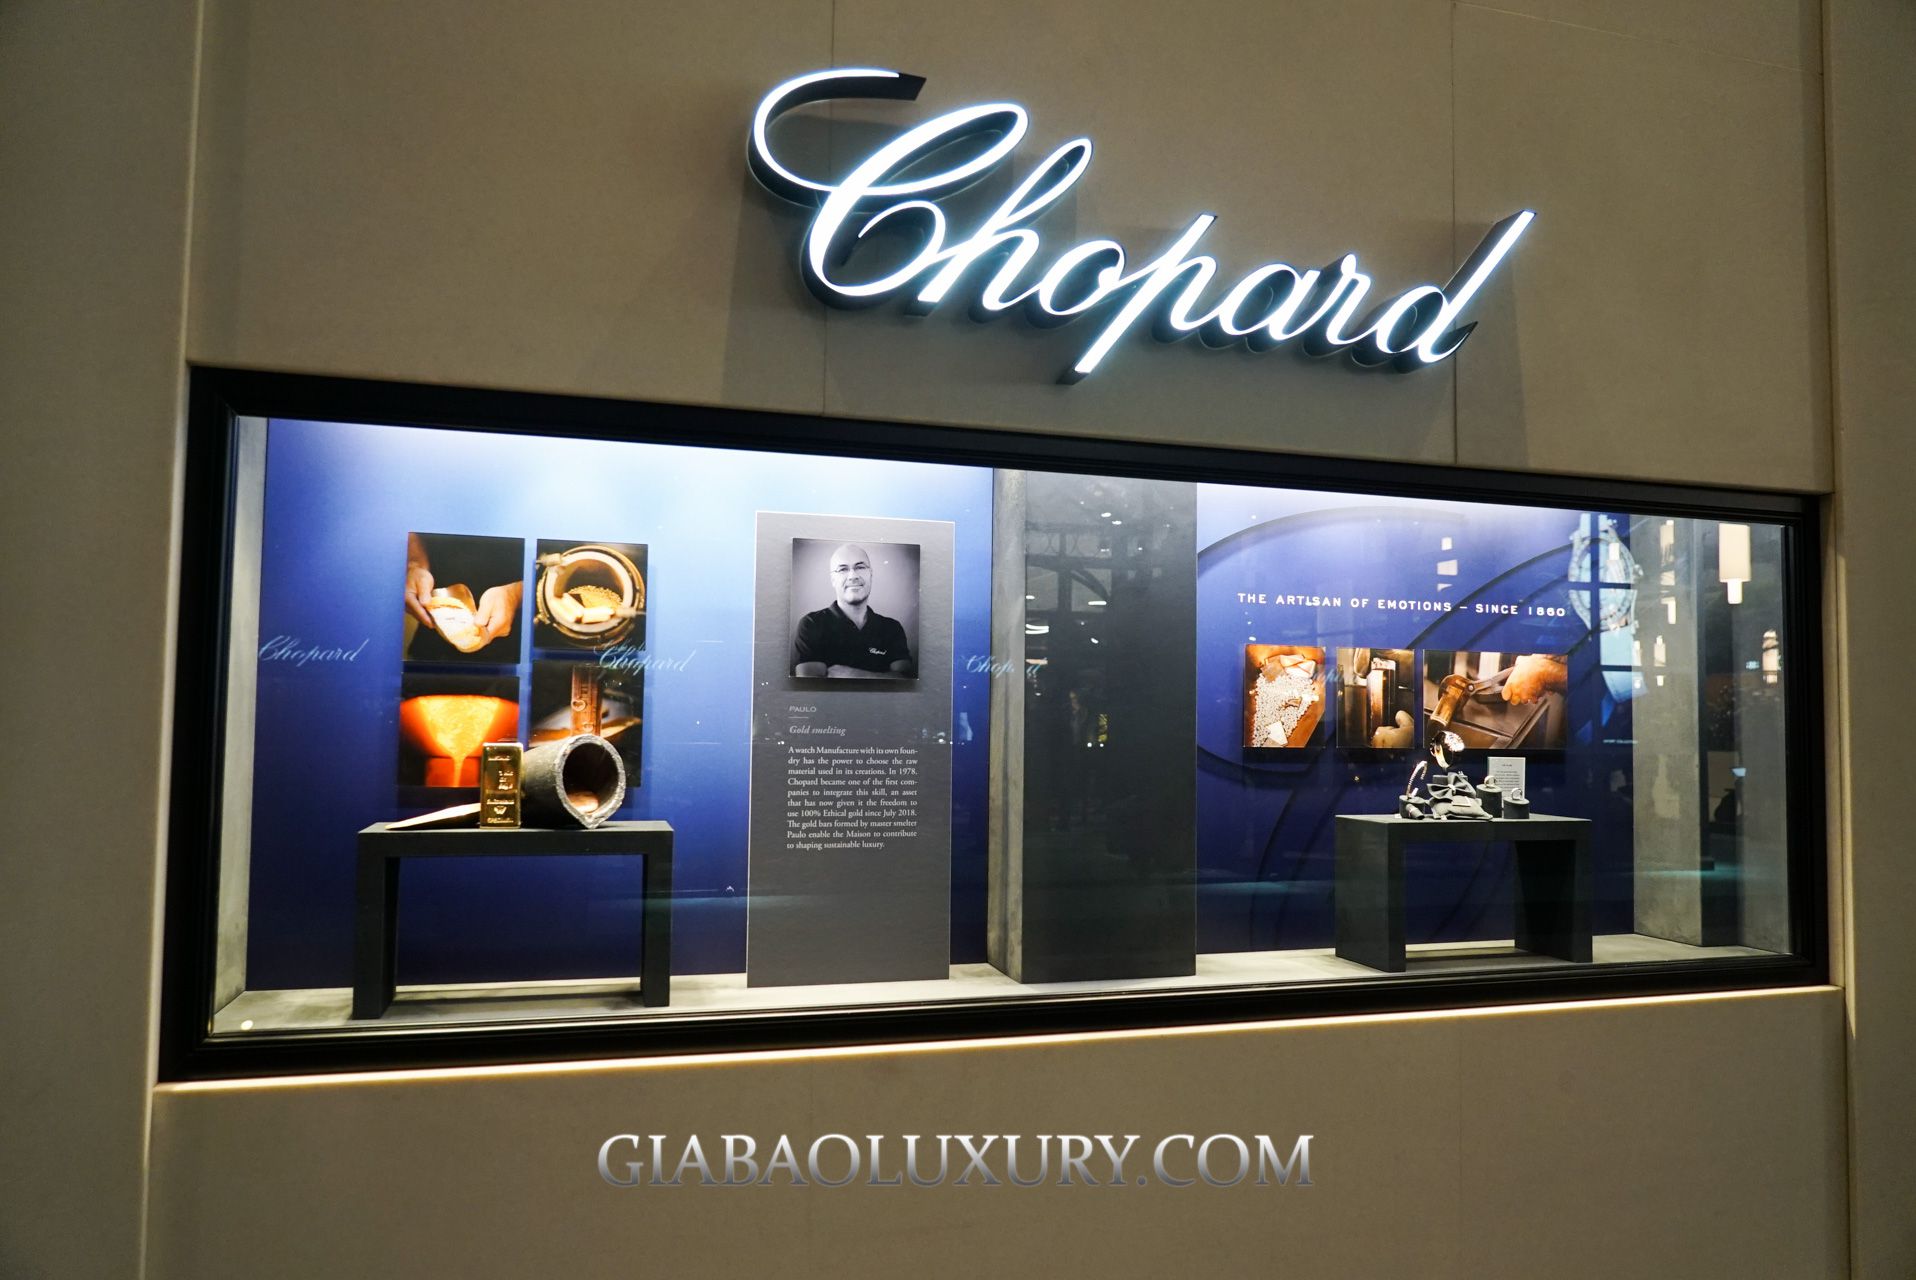 Thương hiệu Chopard là một trong những thương hiệu đồng hồ nổi tiếng trong phân khúc đồng hồ cao cấp